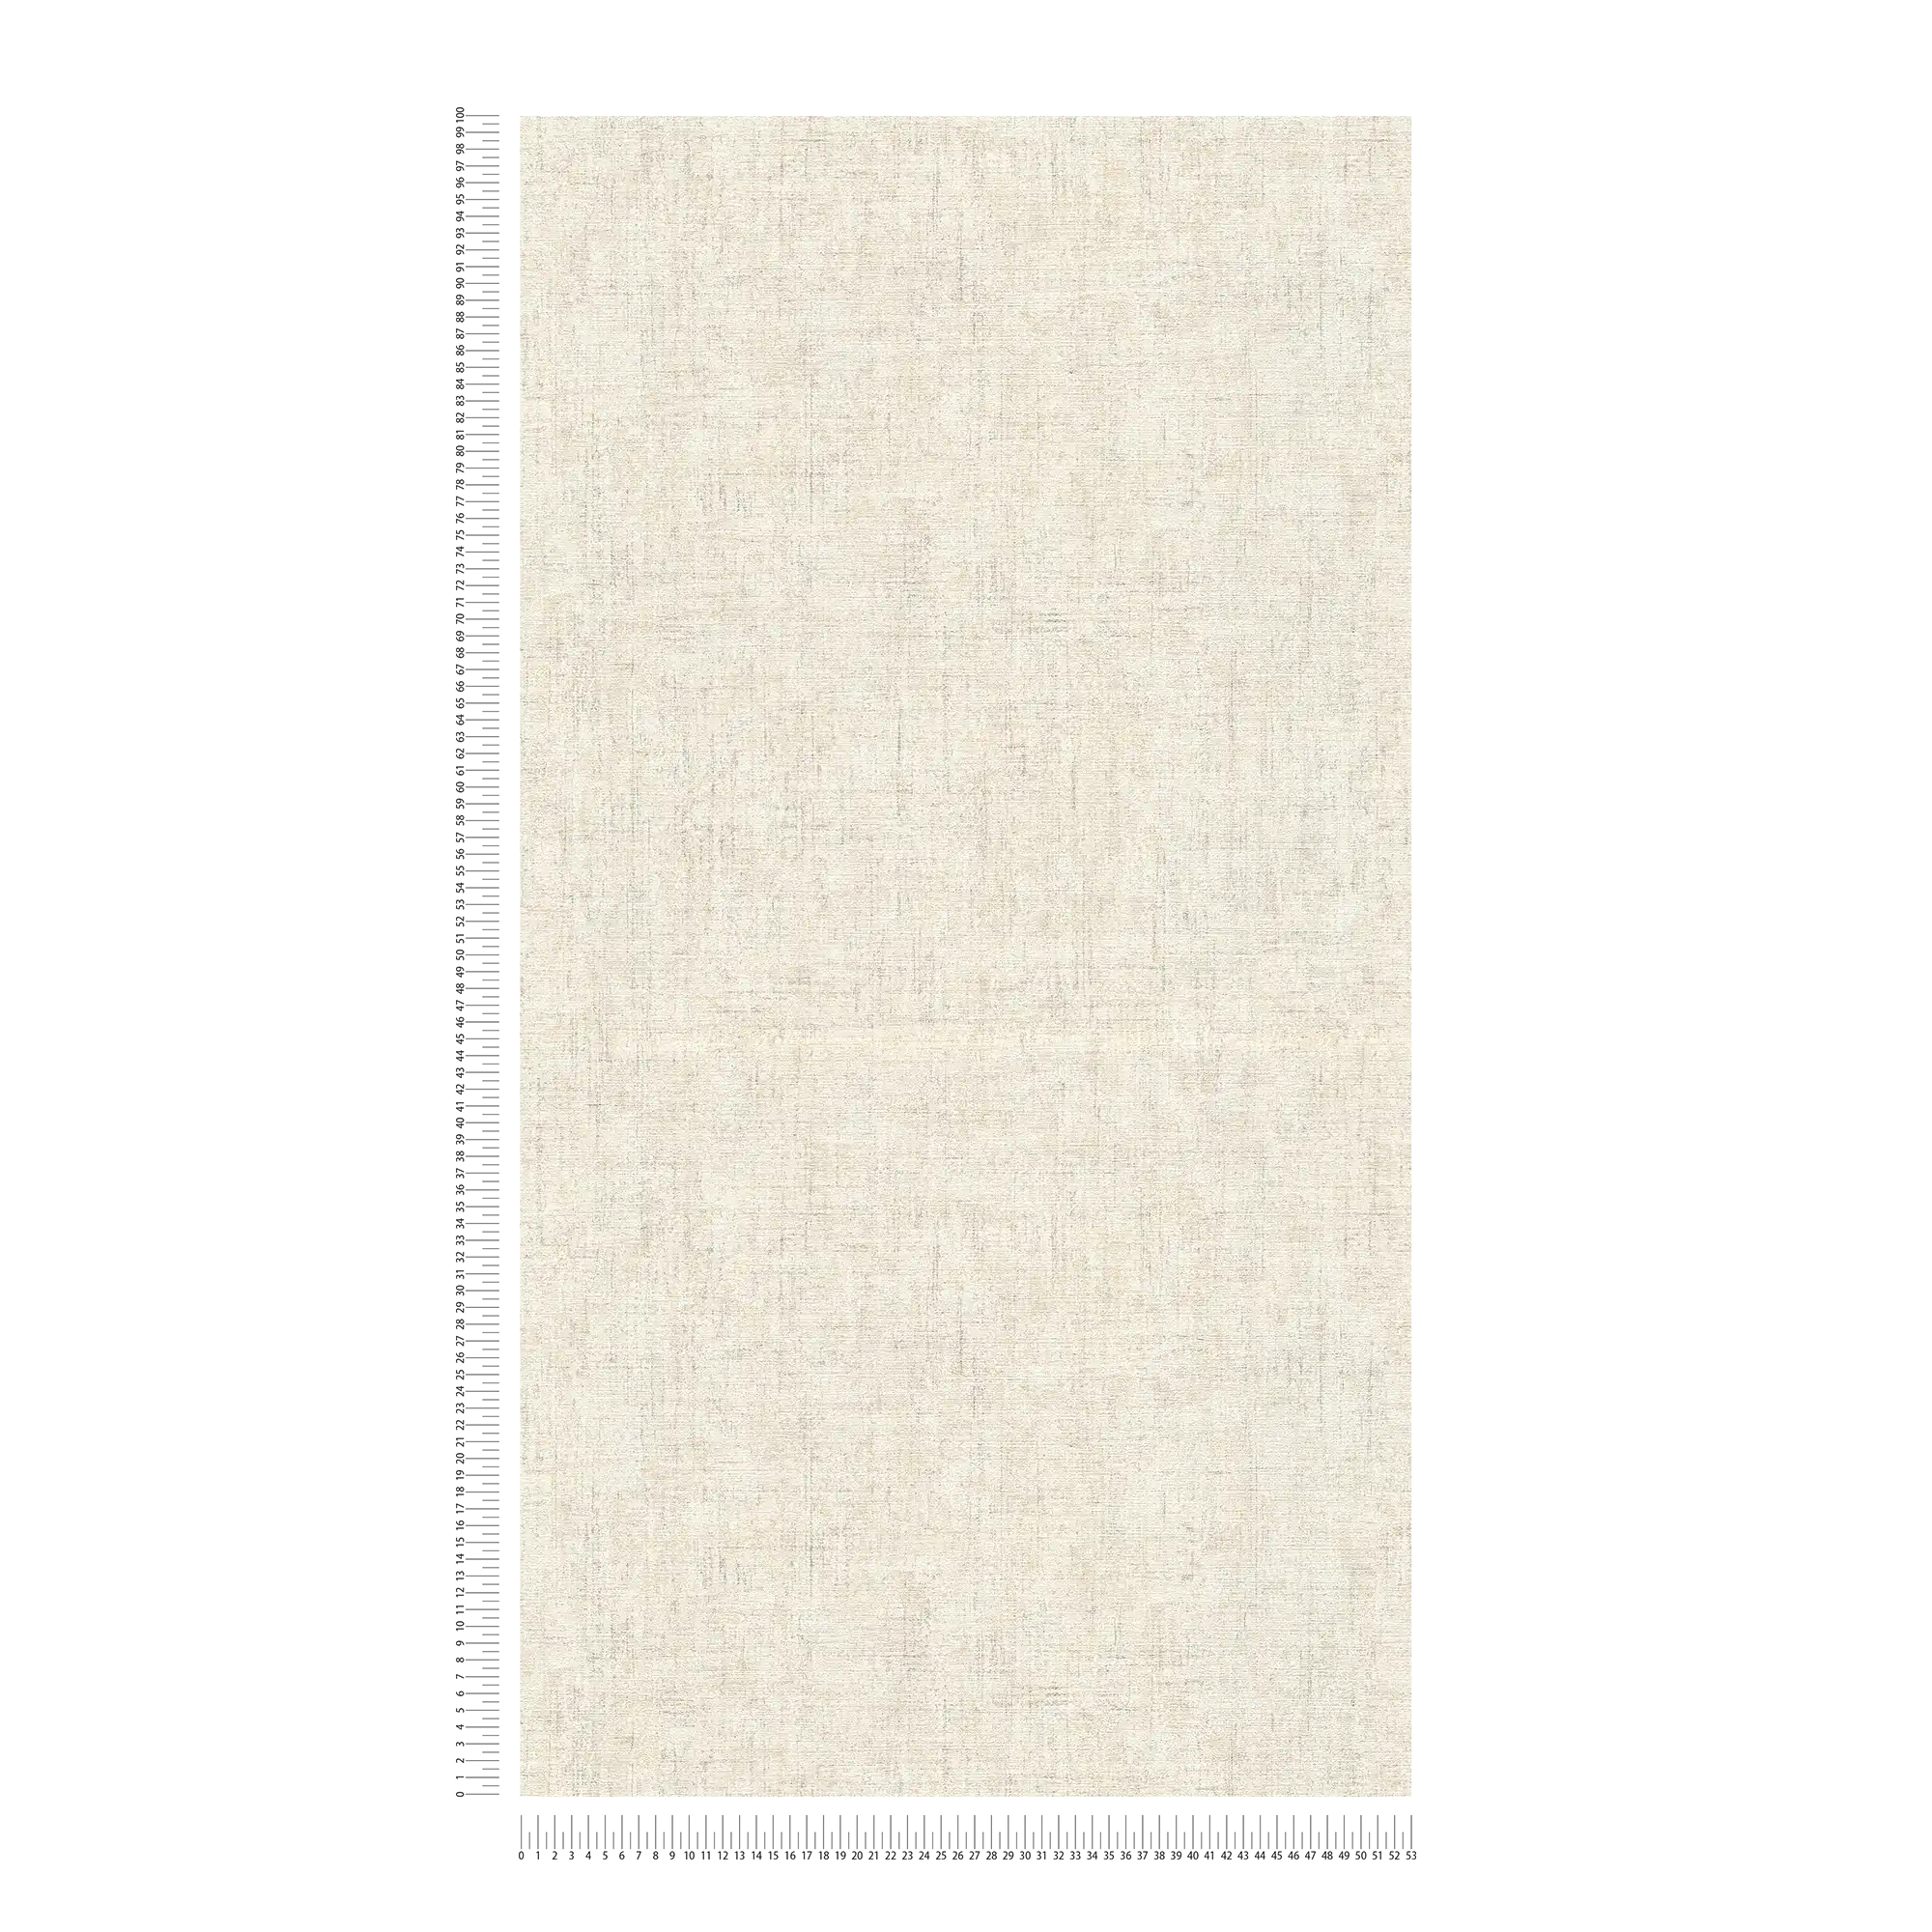             Papier peint uni chiné & design naturel - beige, crème
        